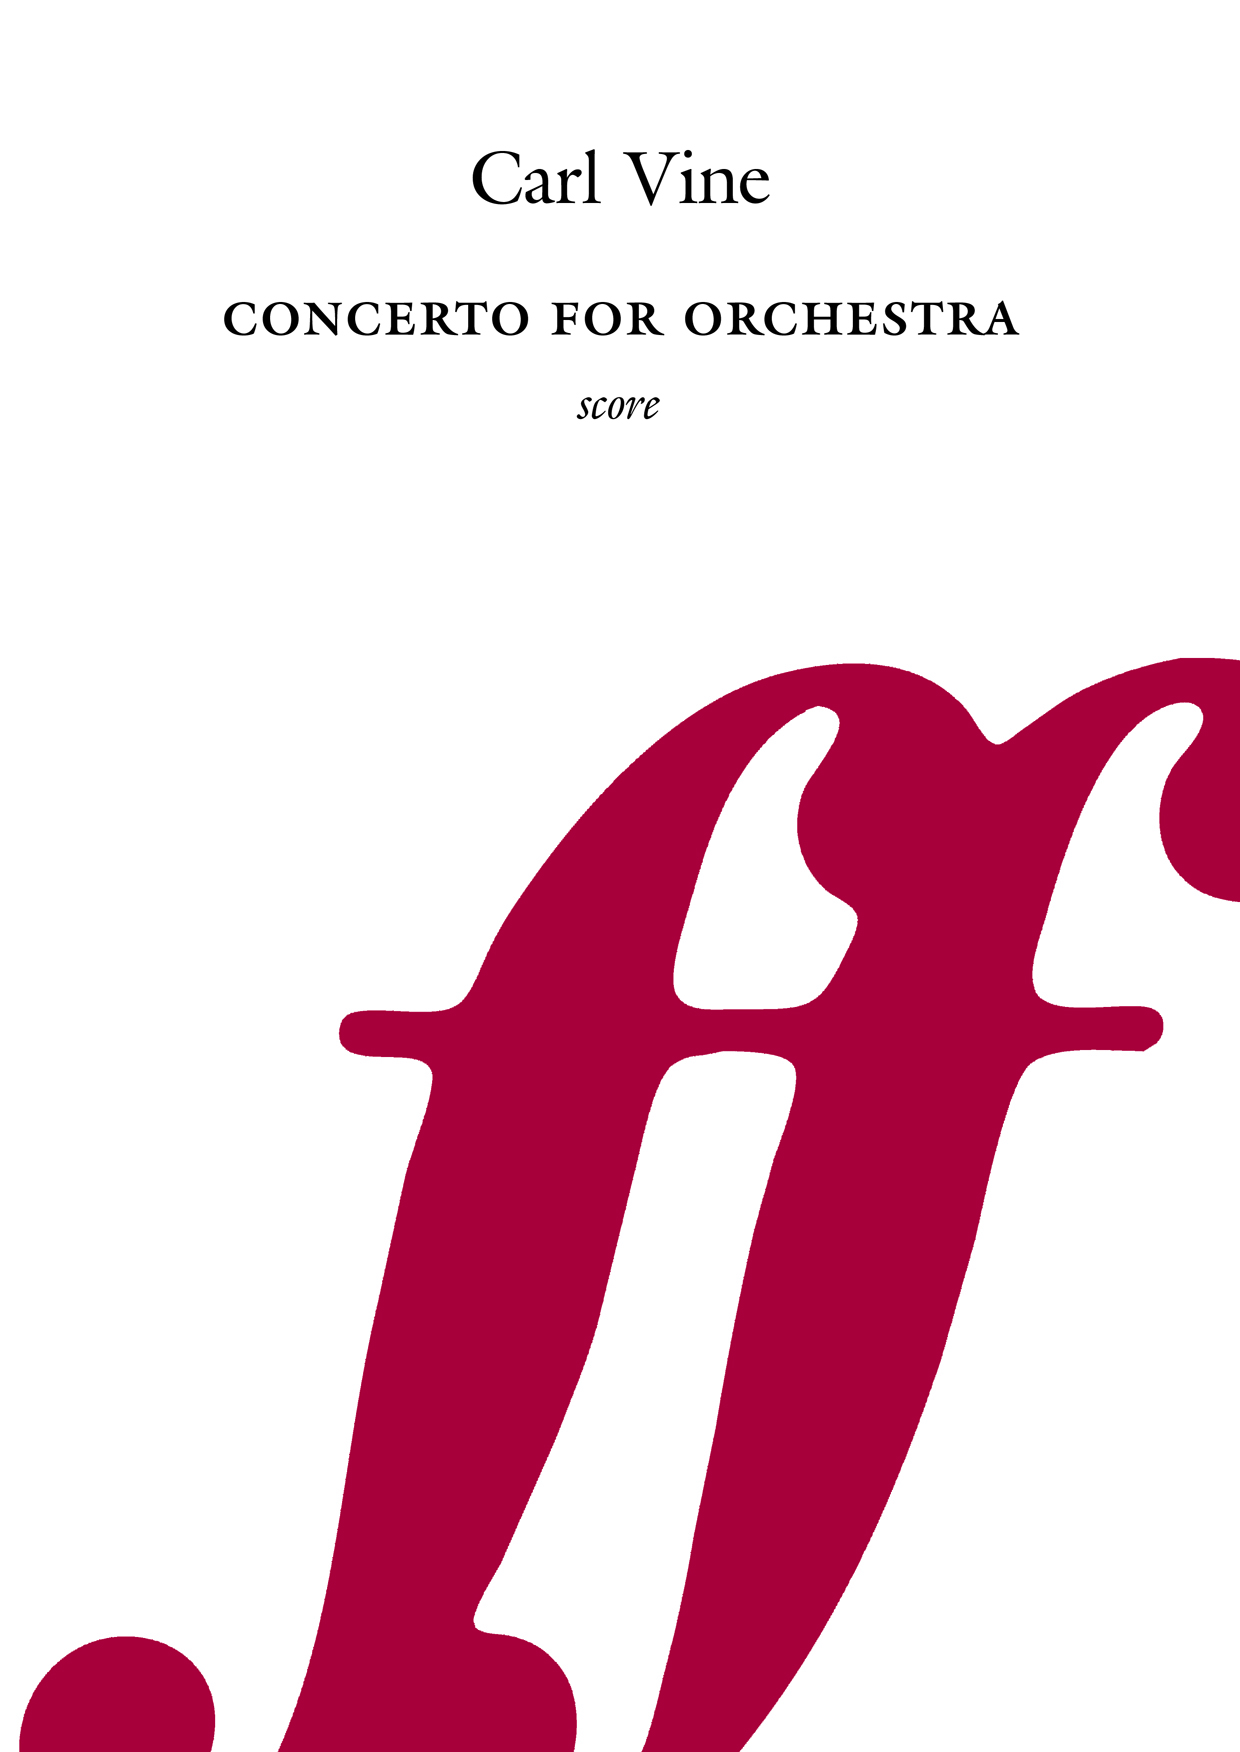 Carl Vine: Concerto for Orchestra: Orchestra: Score